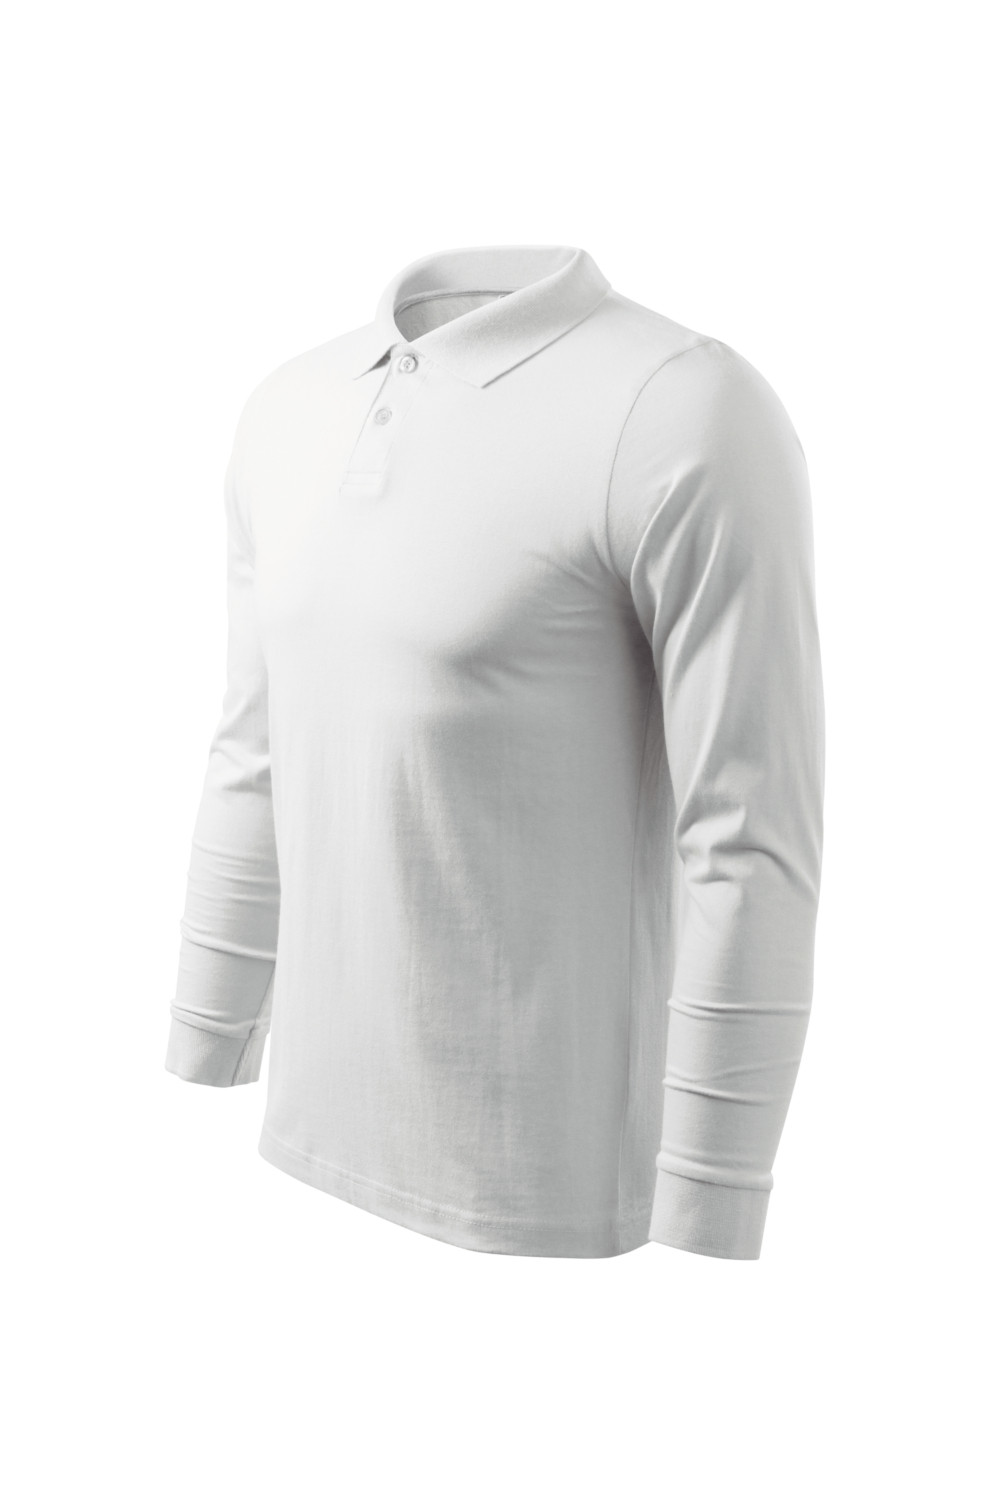 Koszulka Polo męska z długim rękawem 211 polo biały